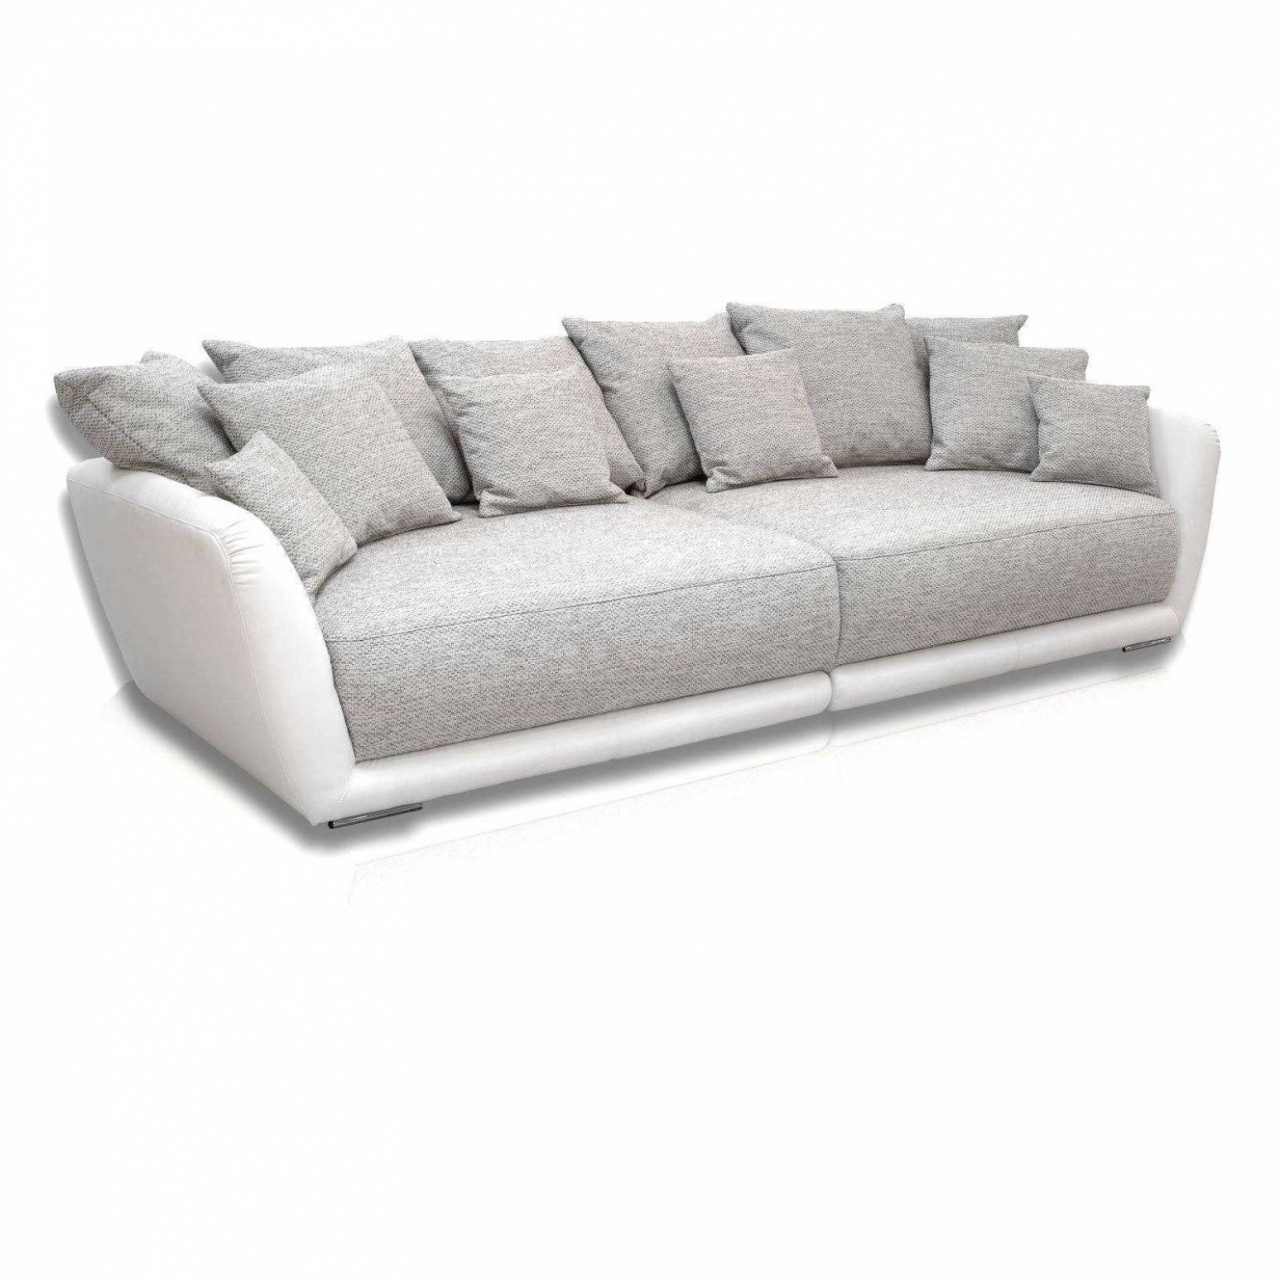 Sofa Mit Recamiere
 Sofa Doppel Recamiere Komfort Sofa Mit Recamiere Und